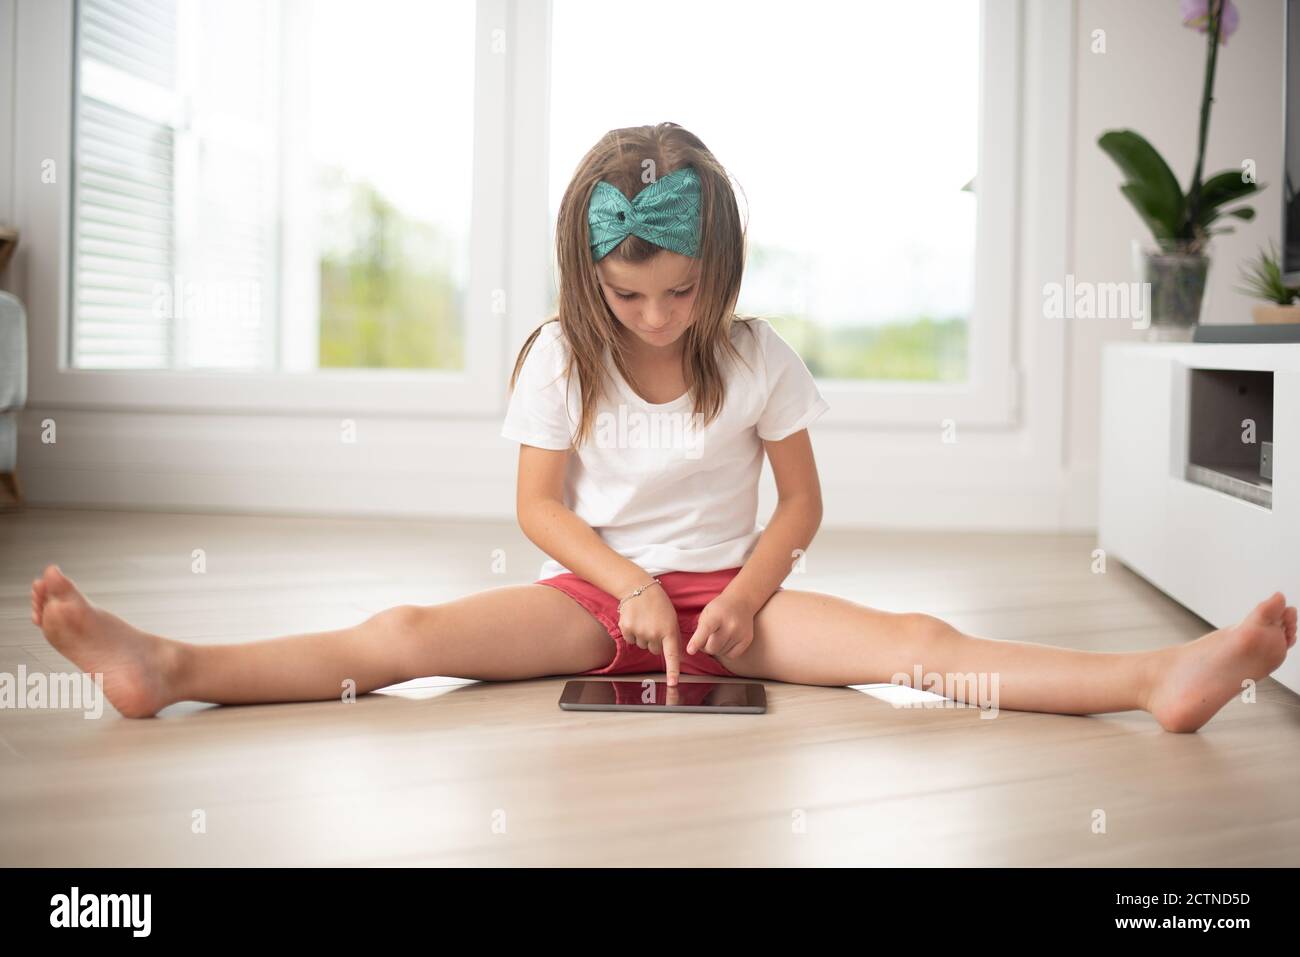 Une petite fille assise sur le sol s'est amusée à l'aide d'un smartphone pendant week-end en s'étirant dans le salon Banque D'Images